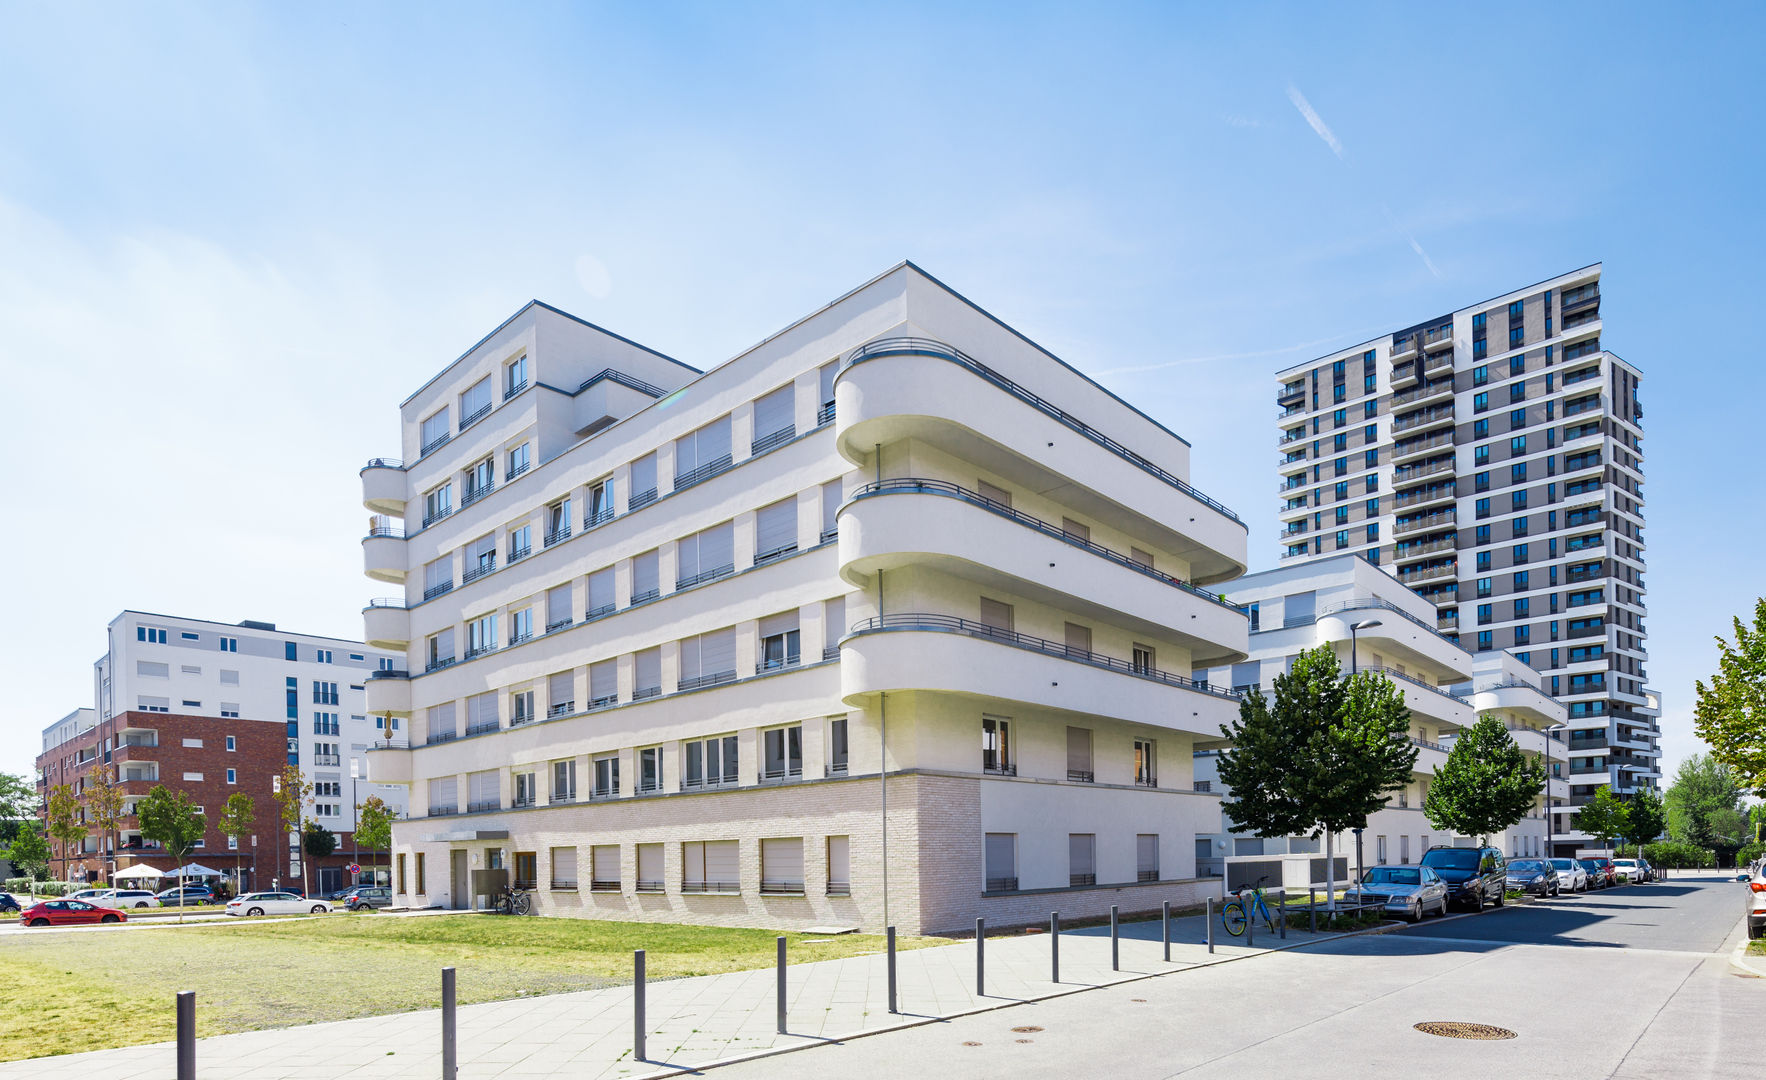 Wohnanlage in Frankfurt am Main, Udo Geisler Photographie Udo Geisler Photographie Casas multifamiliares Concreto